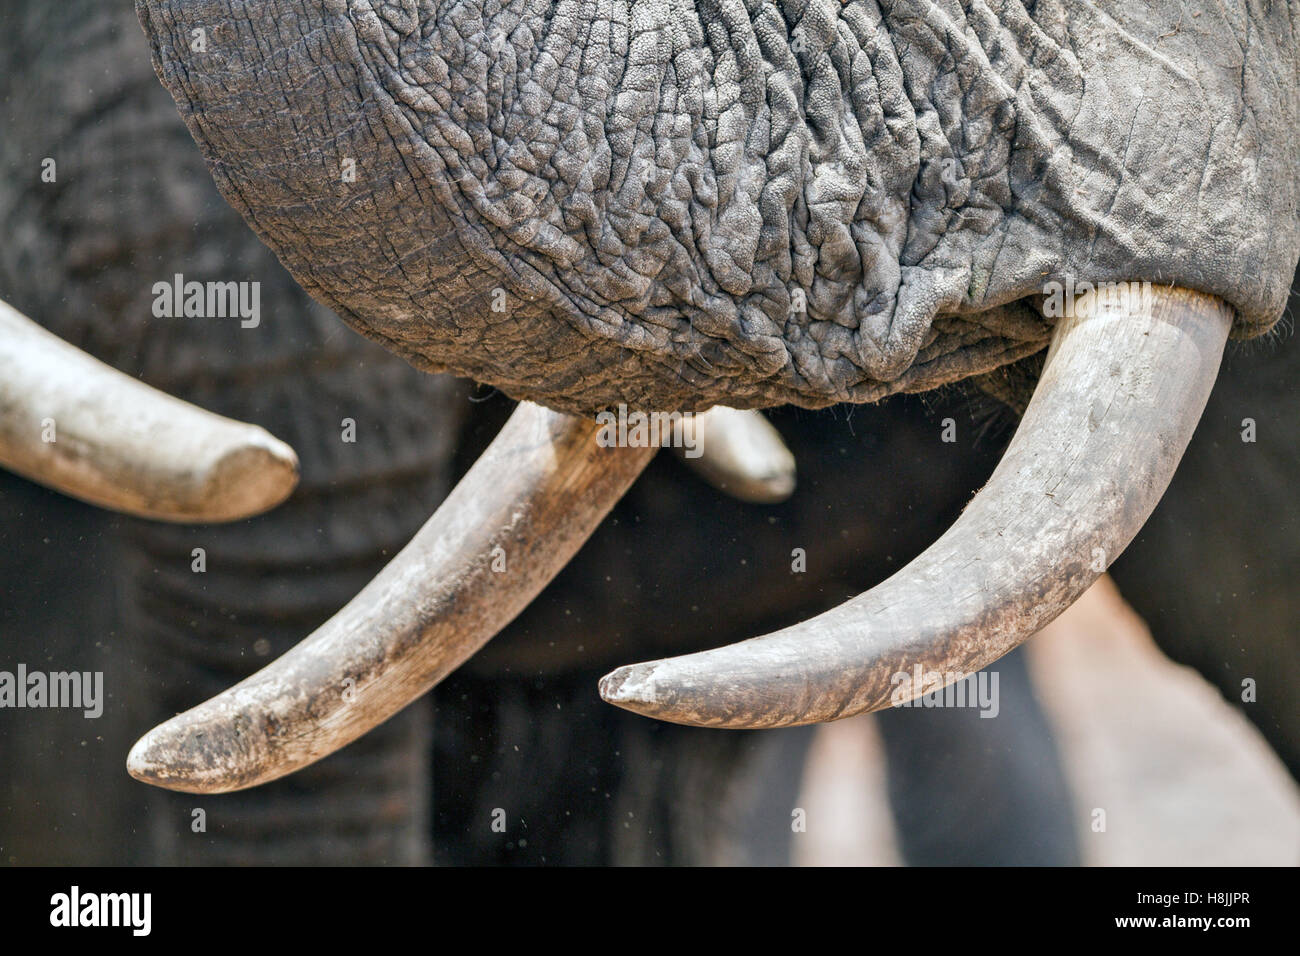 Partie d'une série d'images sur la complexité des interactions sociales de l'éléphant africain quand ils se rassemblent pour boire. Banque D'Images